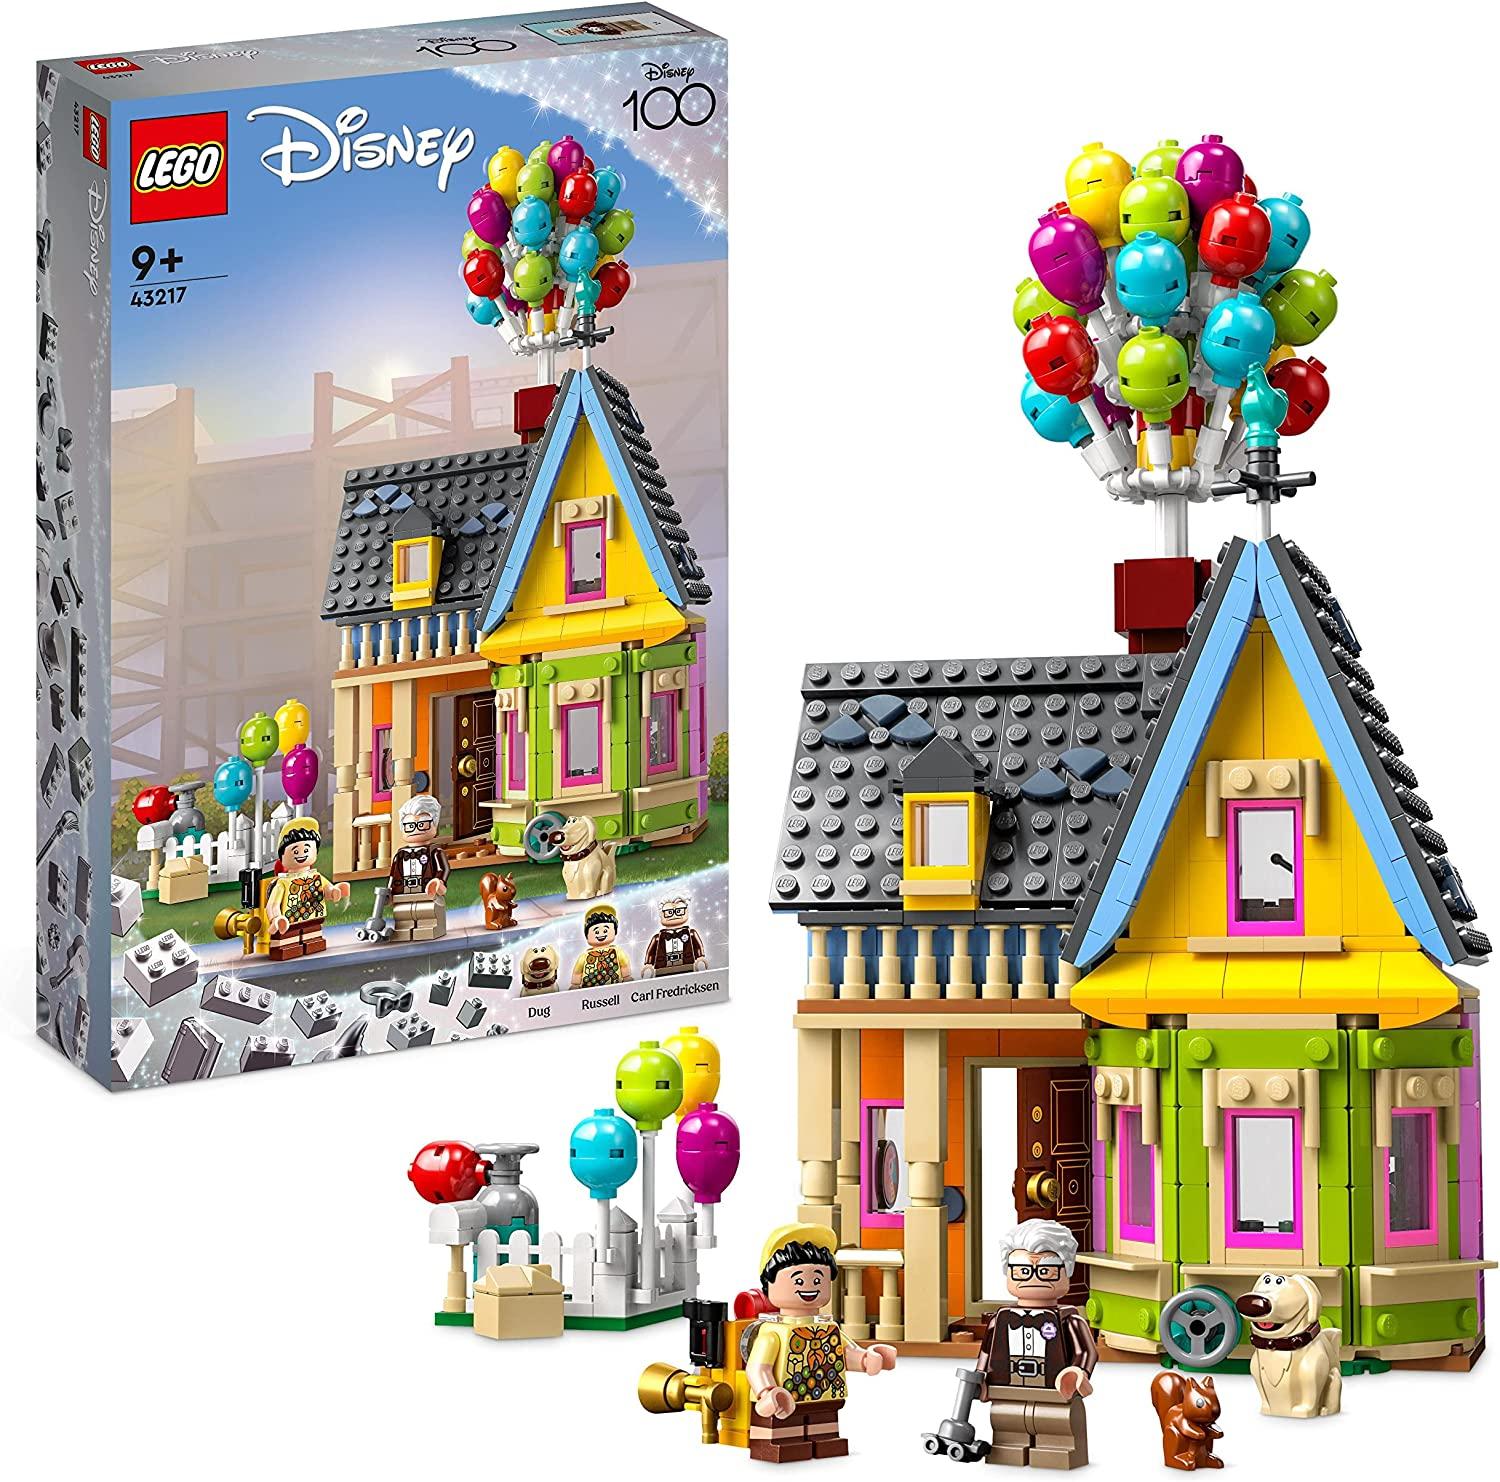 Lego Disney 43217 - Carls Haus aus "Oben"